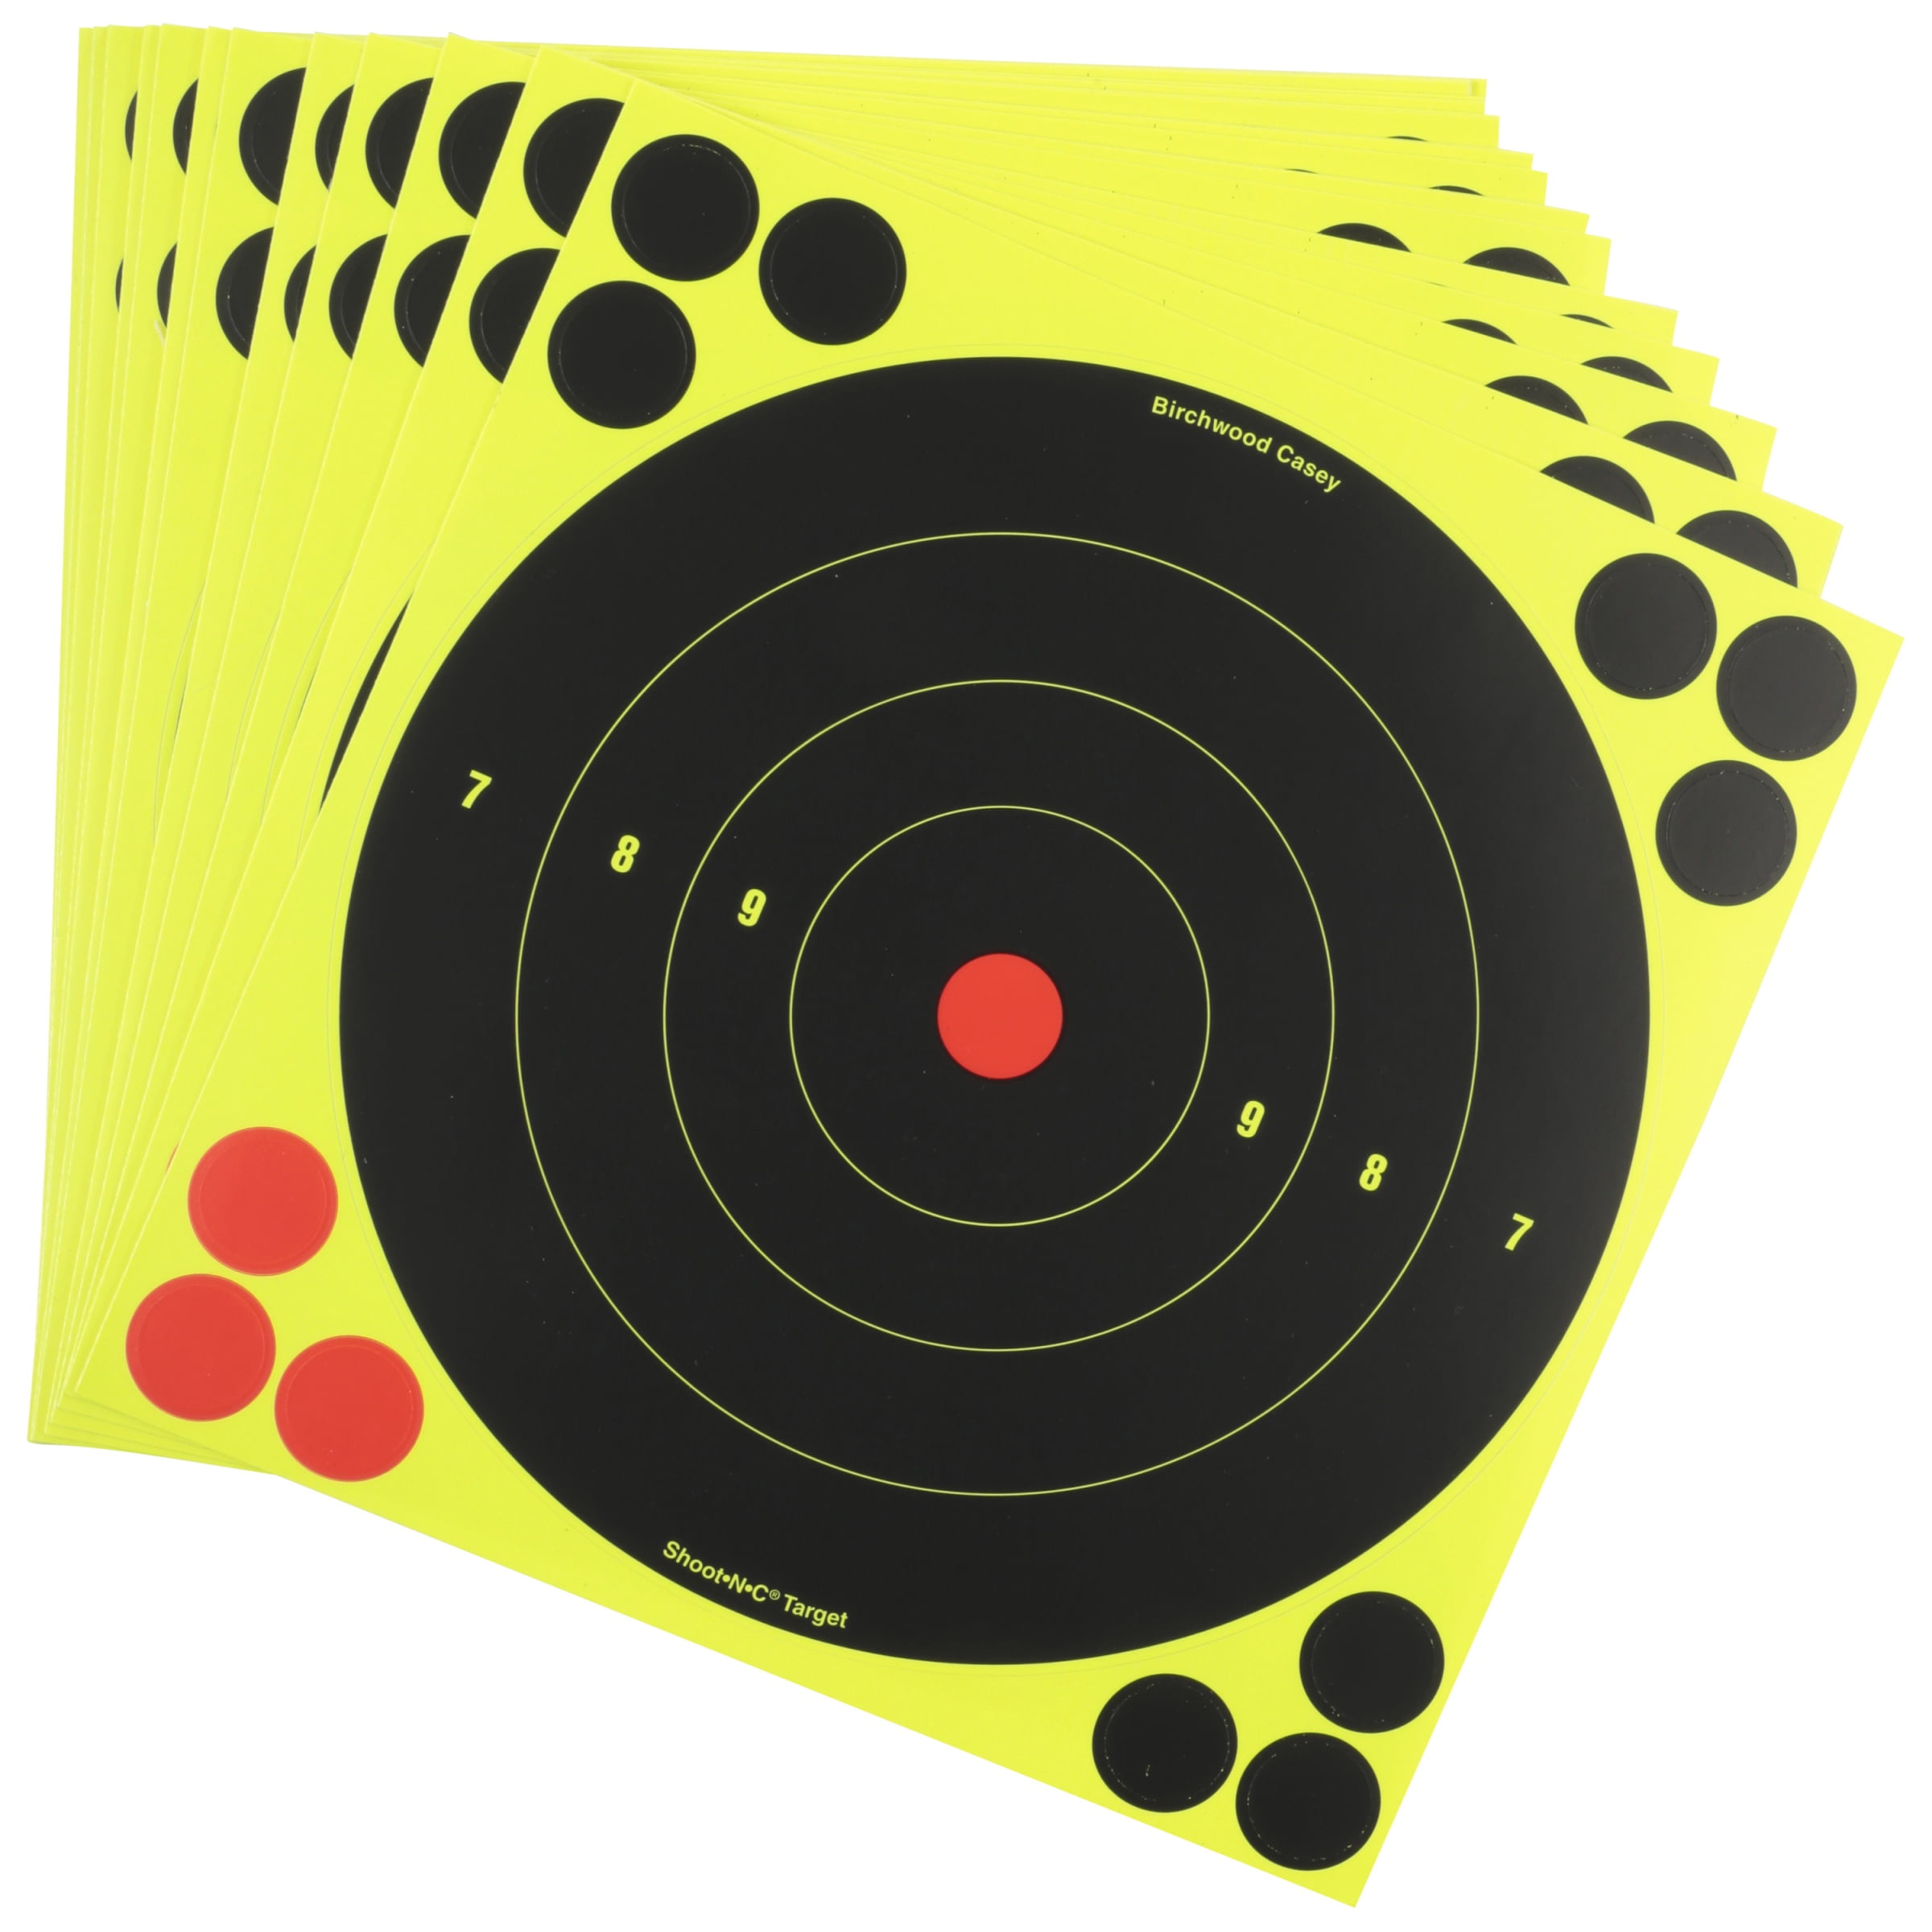 Shoot•N•C® Assorted Bull's-eye Target Kit - 4 targets (4-8, 4-6